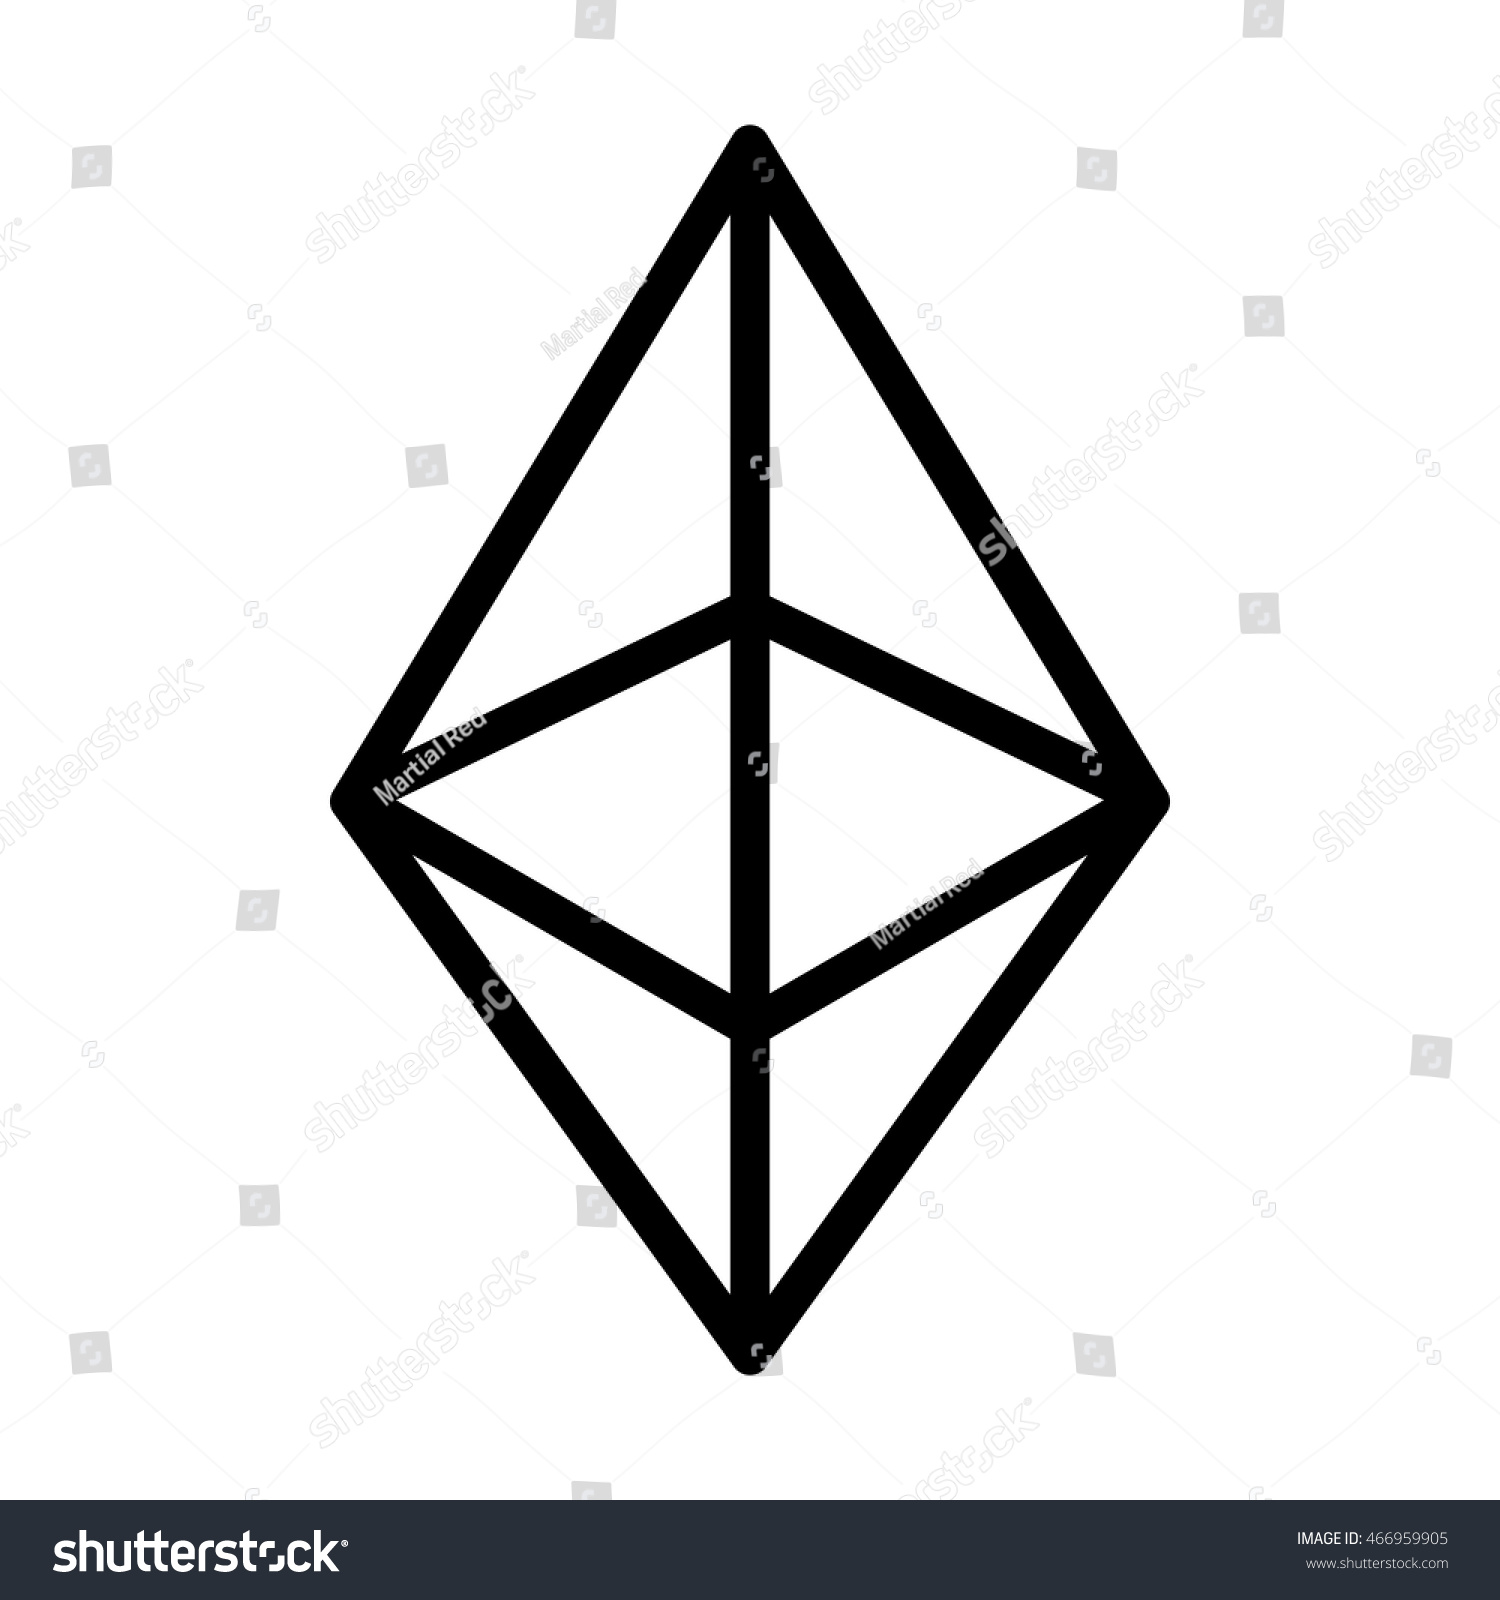 ethereum stock symbol